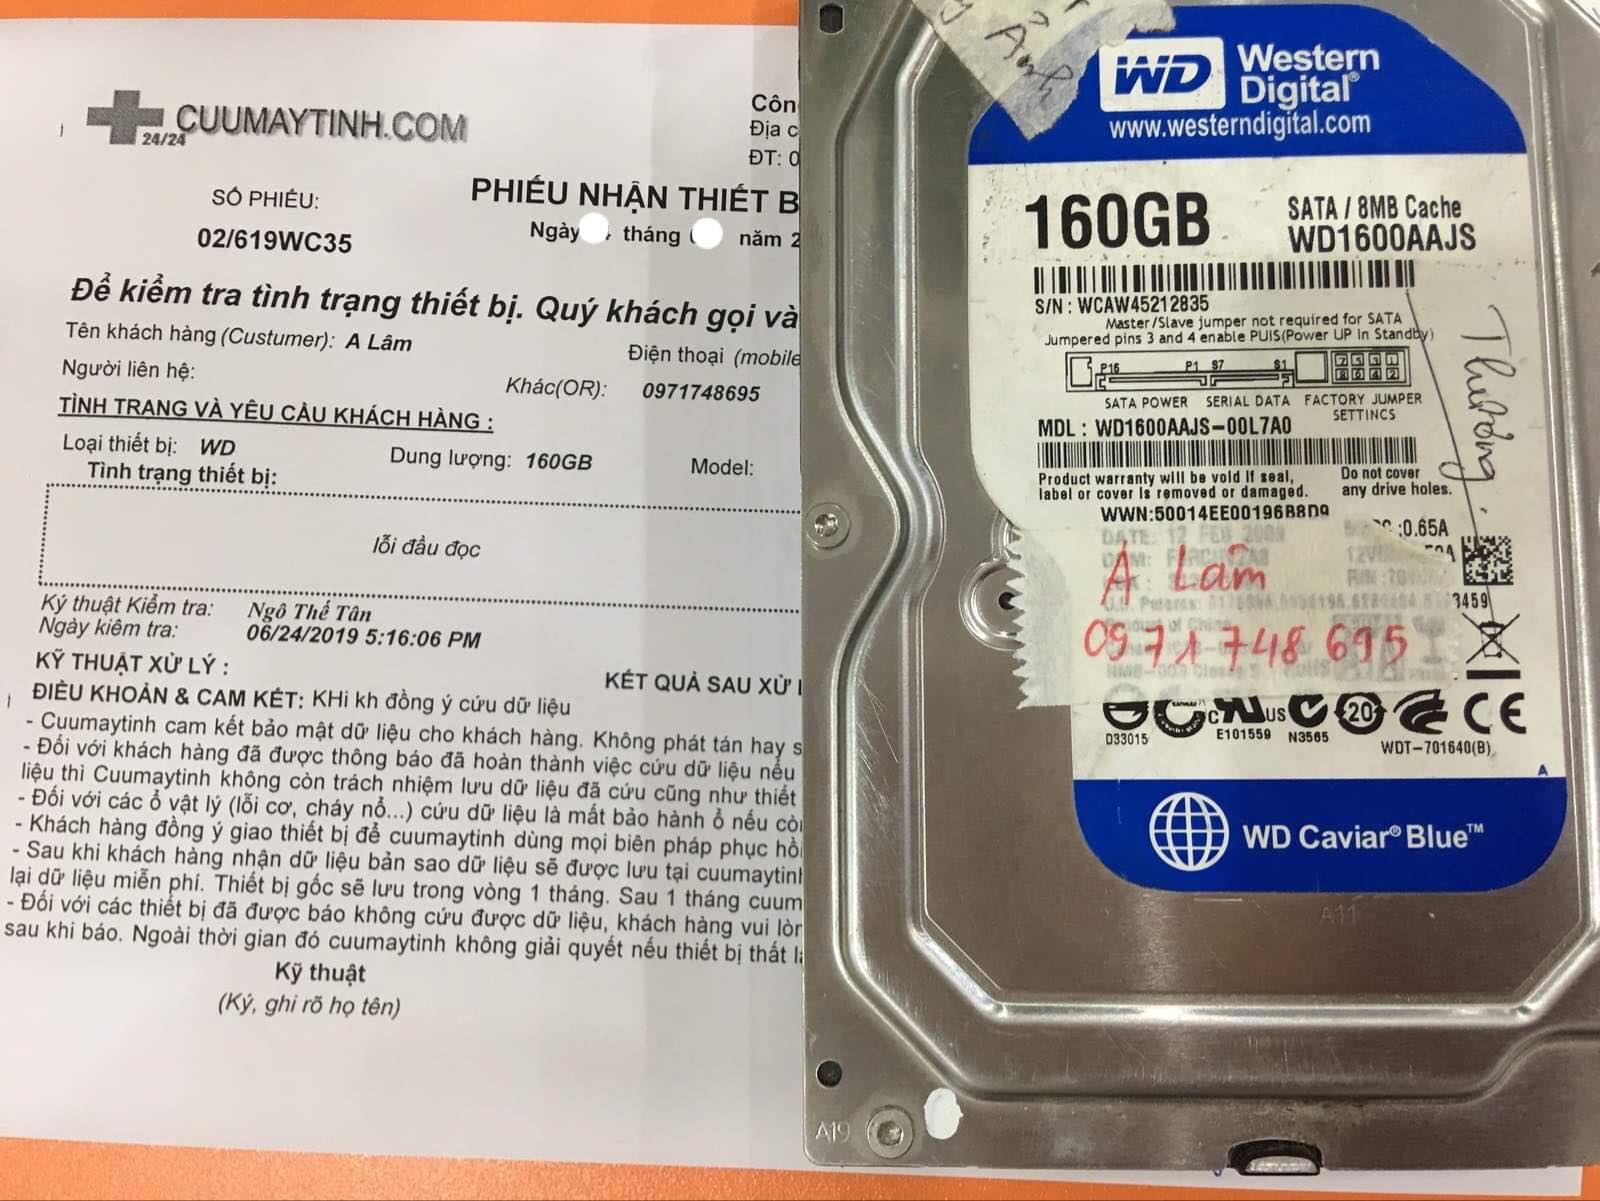 Cứu dữ liệu ổ cứng Western 1TB lỗi đầu đọc 09/07/2019 - cuumaytinh